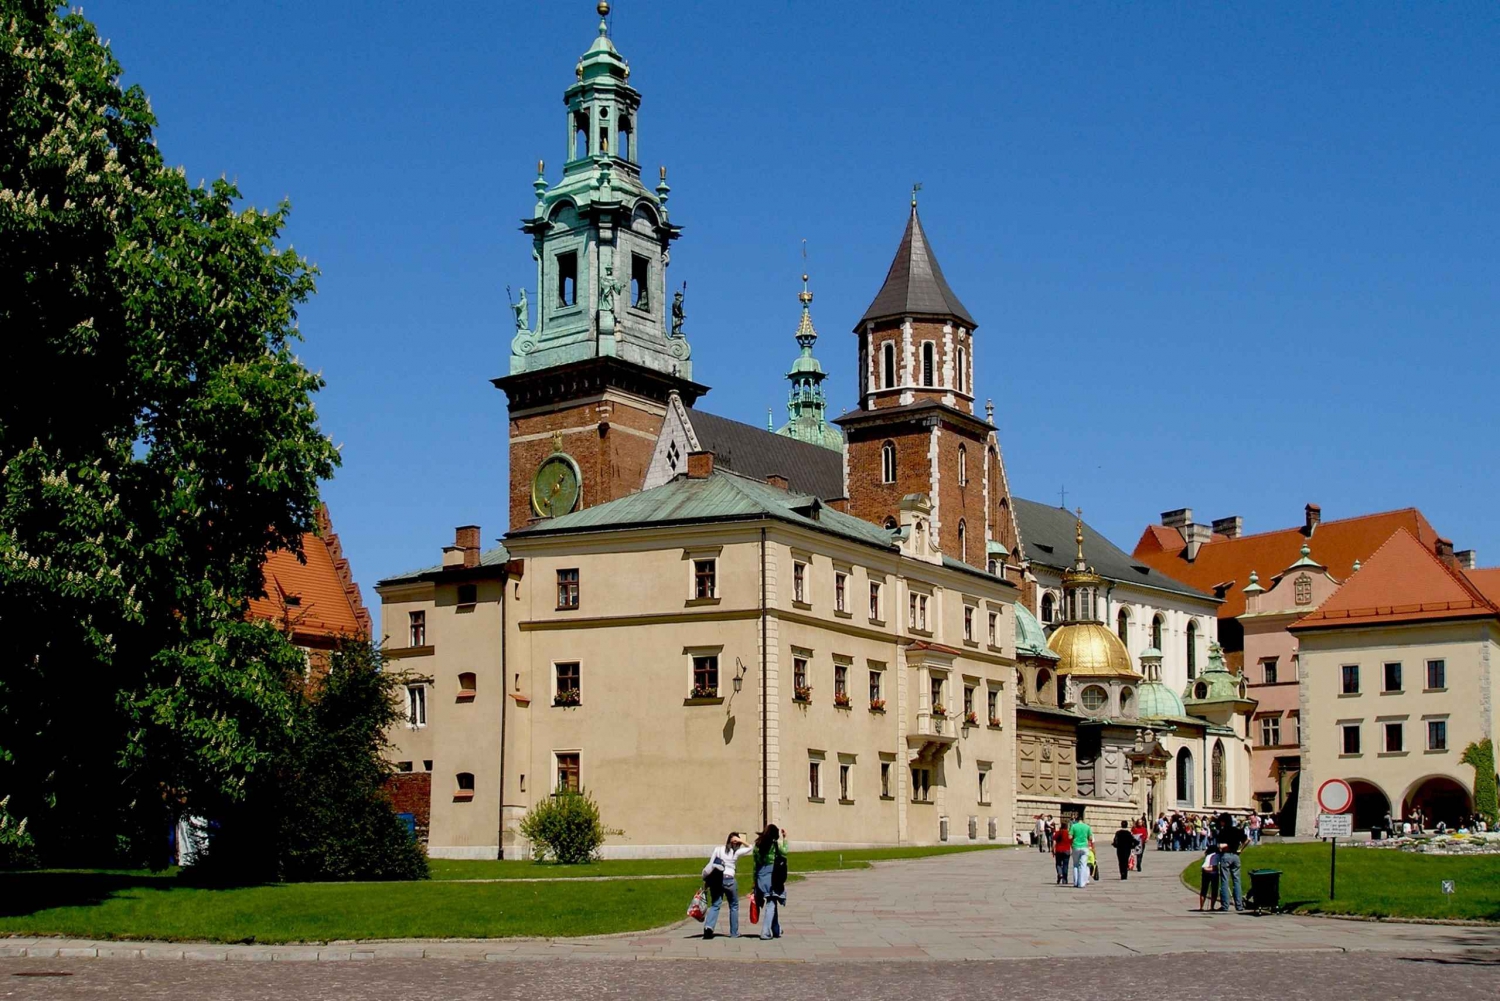 Krakau: Wawel Hill-rondleiding met toegang tot de Wawel-kathedraal